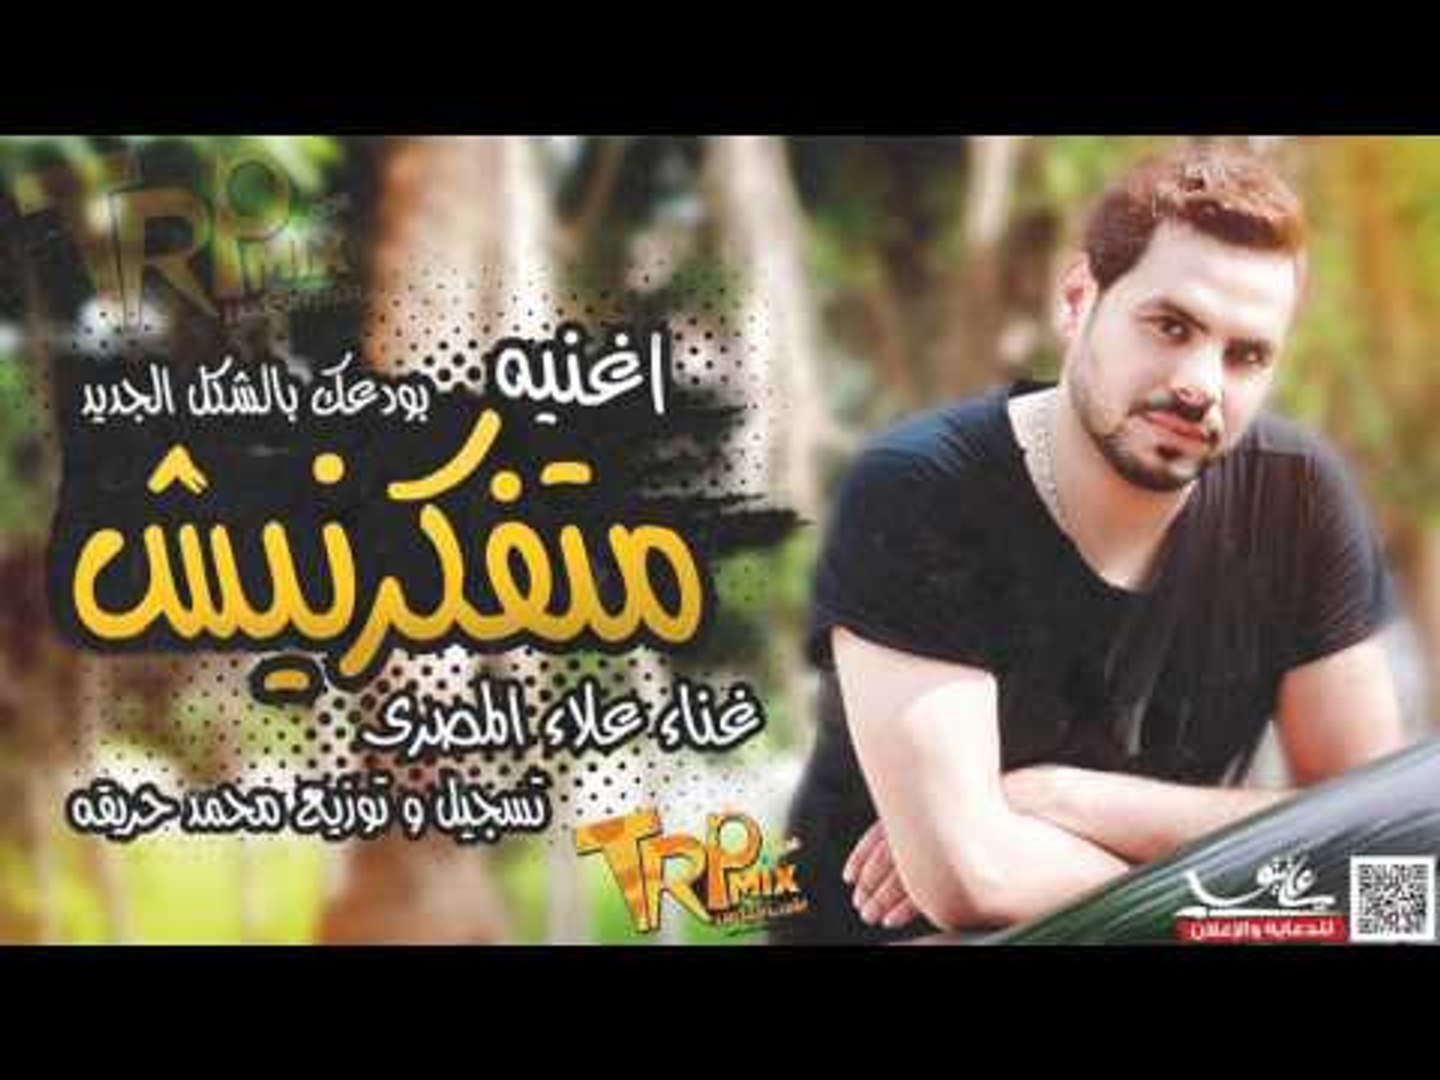 اغنيه متفكرنيش - بودعك بالشكل الجديد غناء علاء المصرى تسجيل و توزيع محمد  حريقه - video Dailymotion